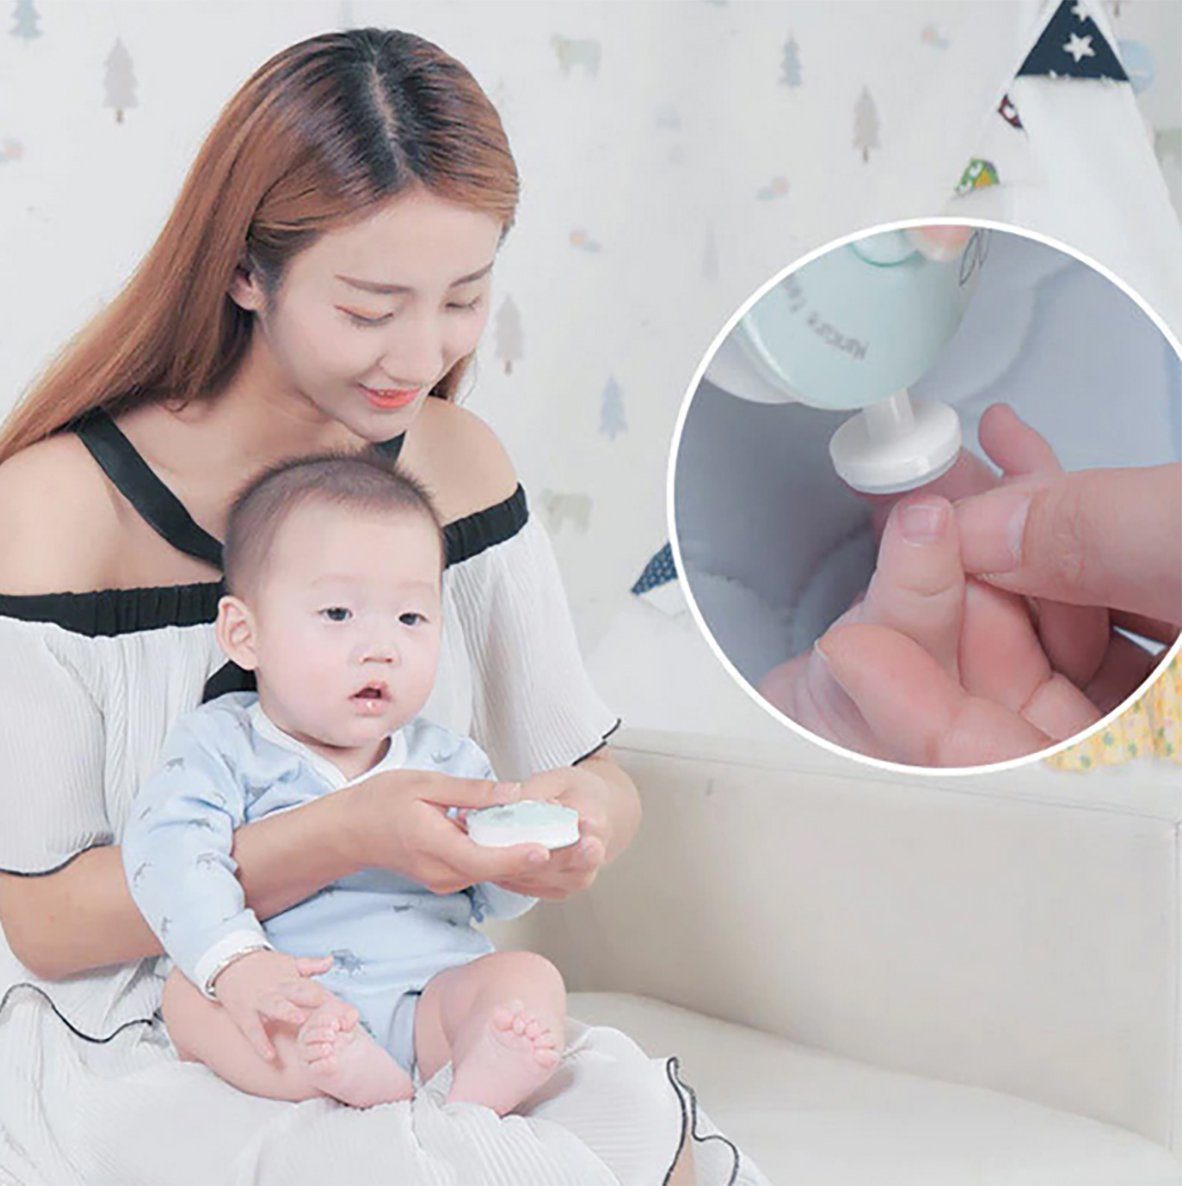 Rosa Pediküreset TPFBeauty - 1 Akku Säuglinge Elektrisch Nagelfeile Kleinkinder Babypflege-Set für Baby tlg., und mit Elektrische Sicherer Baby-Nagelschneider,